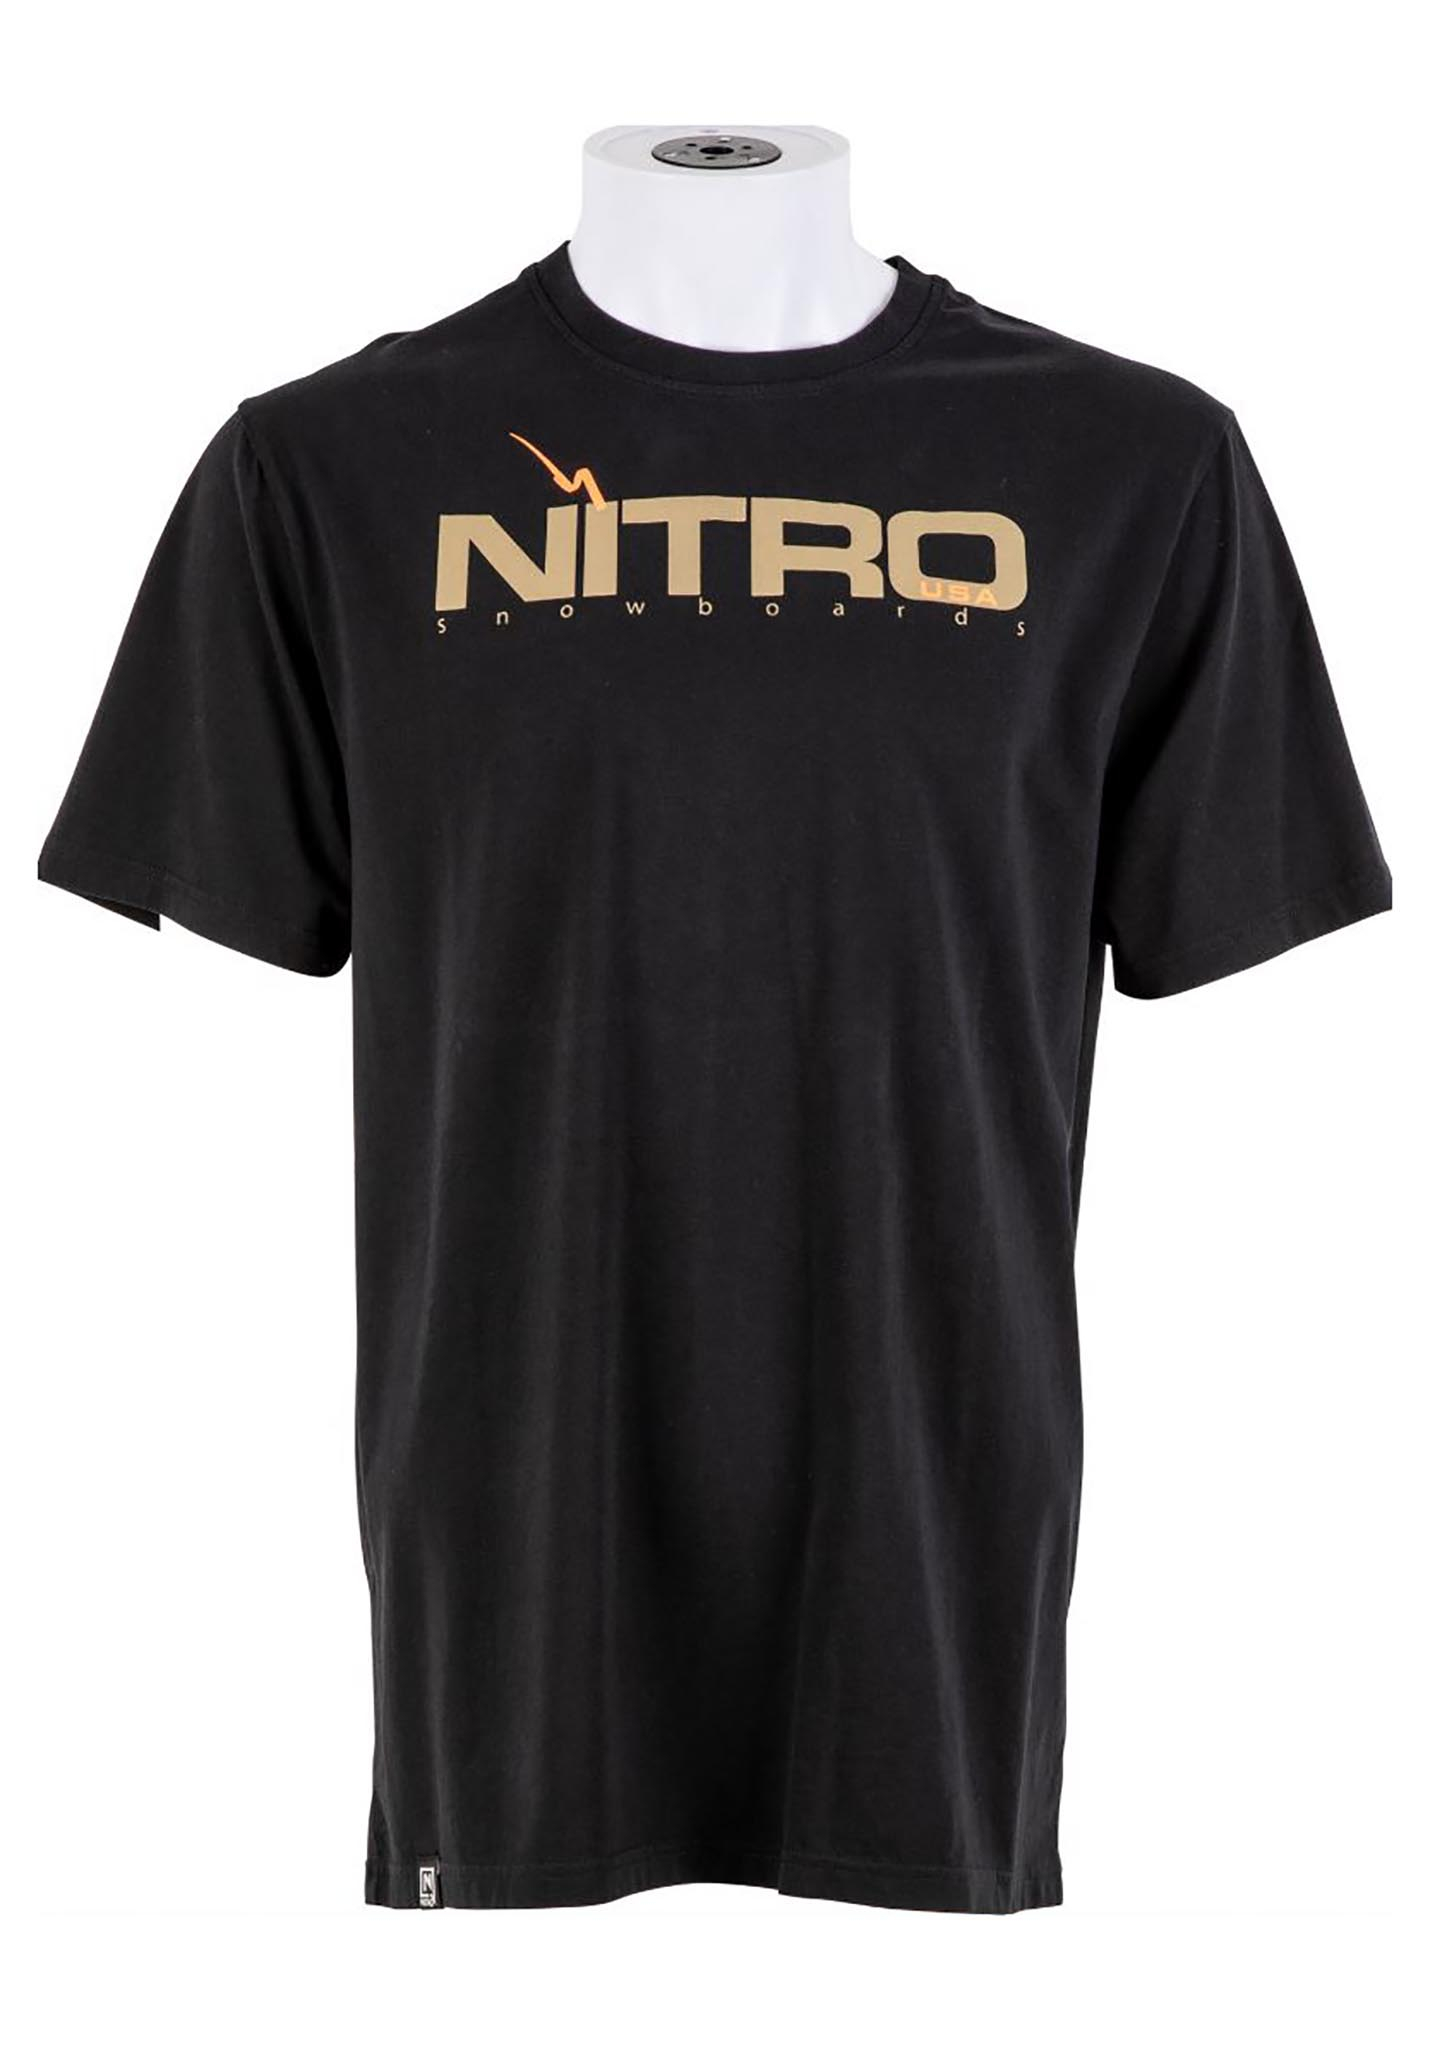 Nitro 1990 T-Shirt black S